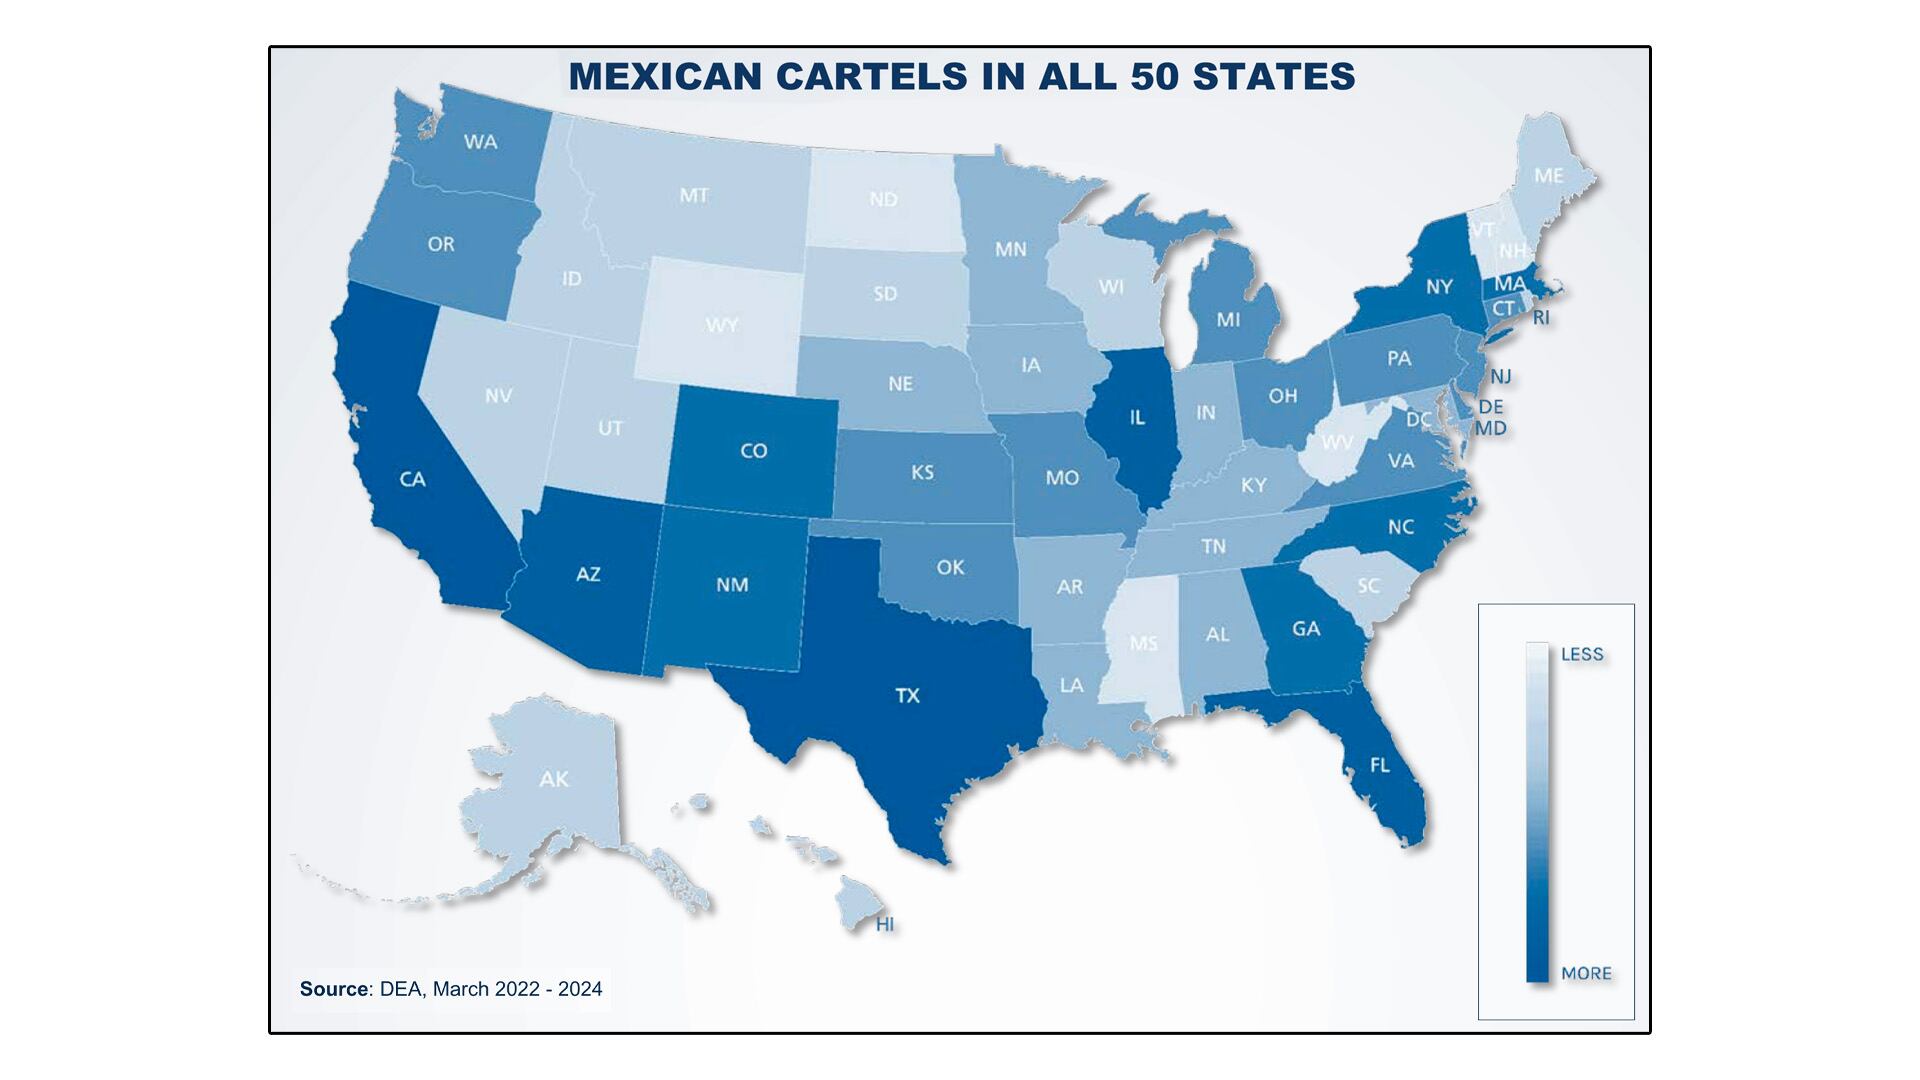 Este mapa indica mayor o menor presencia de cárteles de narcotráfico mexicanos en los 50 estados de la unión americana.